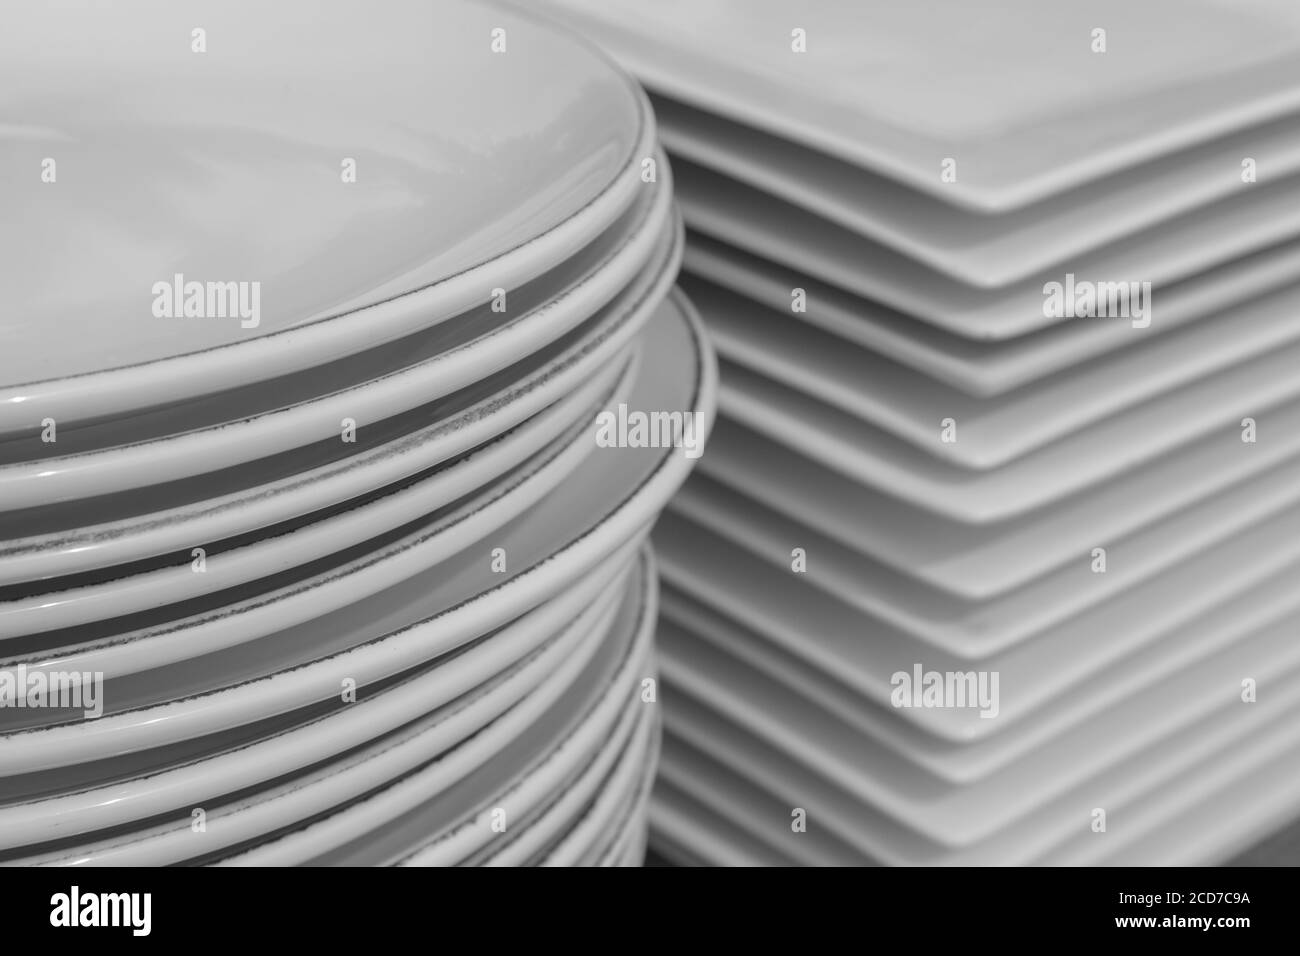 Pile de vaisselle en porcelaine blanche. Pile de vaisselle en céramique. Banque D'Images